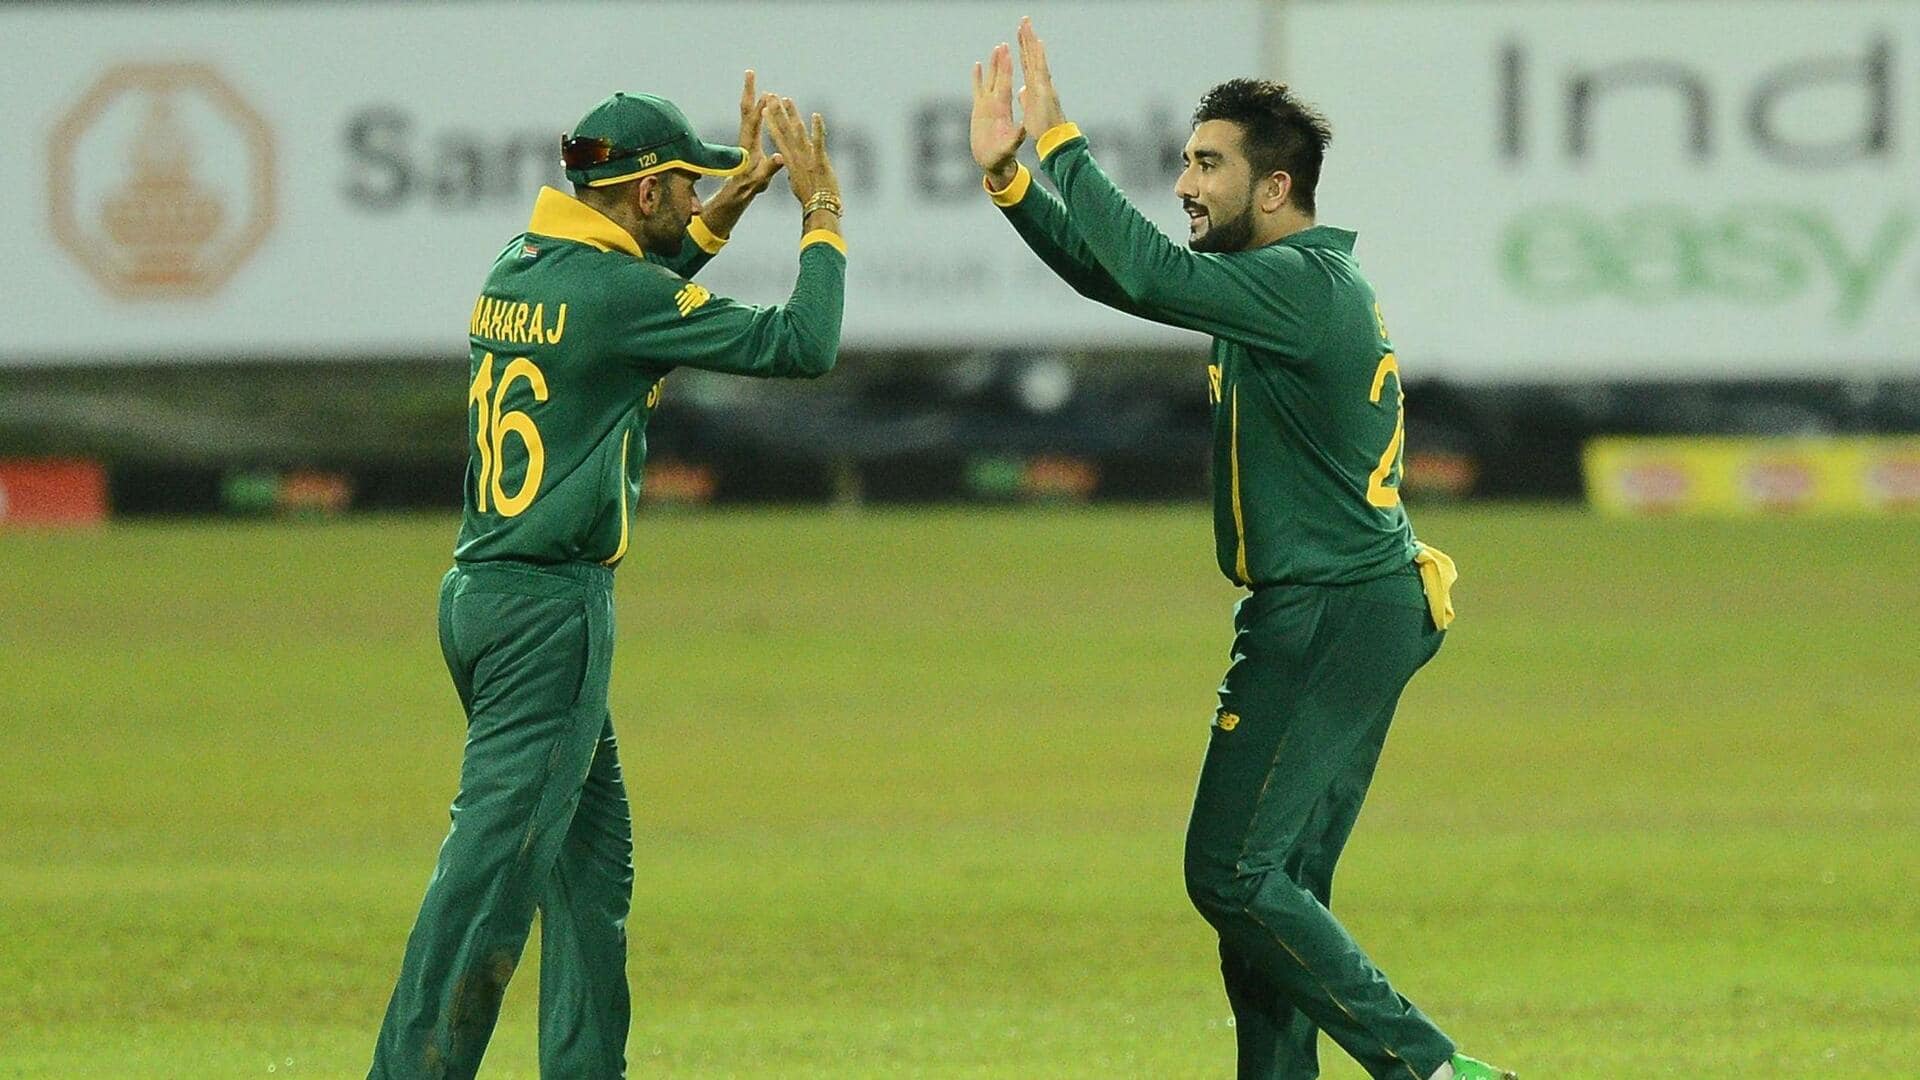 पाकिस्तान बनाम दक्षिण अफ्रीका: तबरेज शम्सी ने चटकाए 4 विकेट, अंतरराष्ट्रीय क्रिकेट में 150 विकेट पूरे